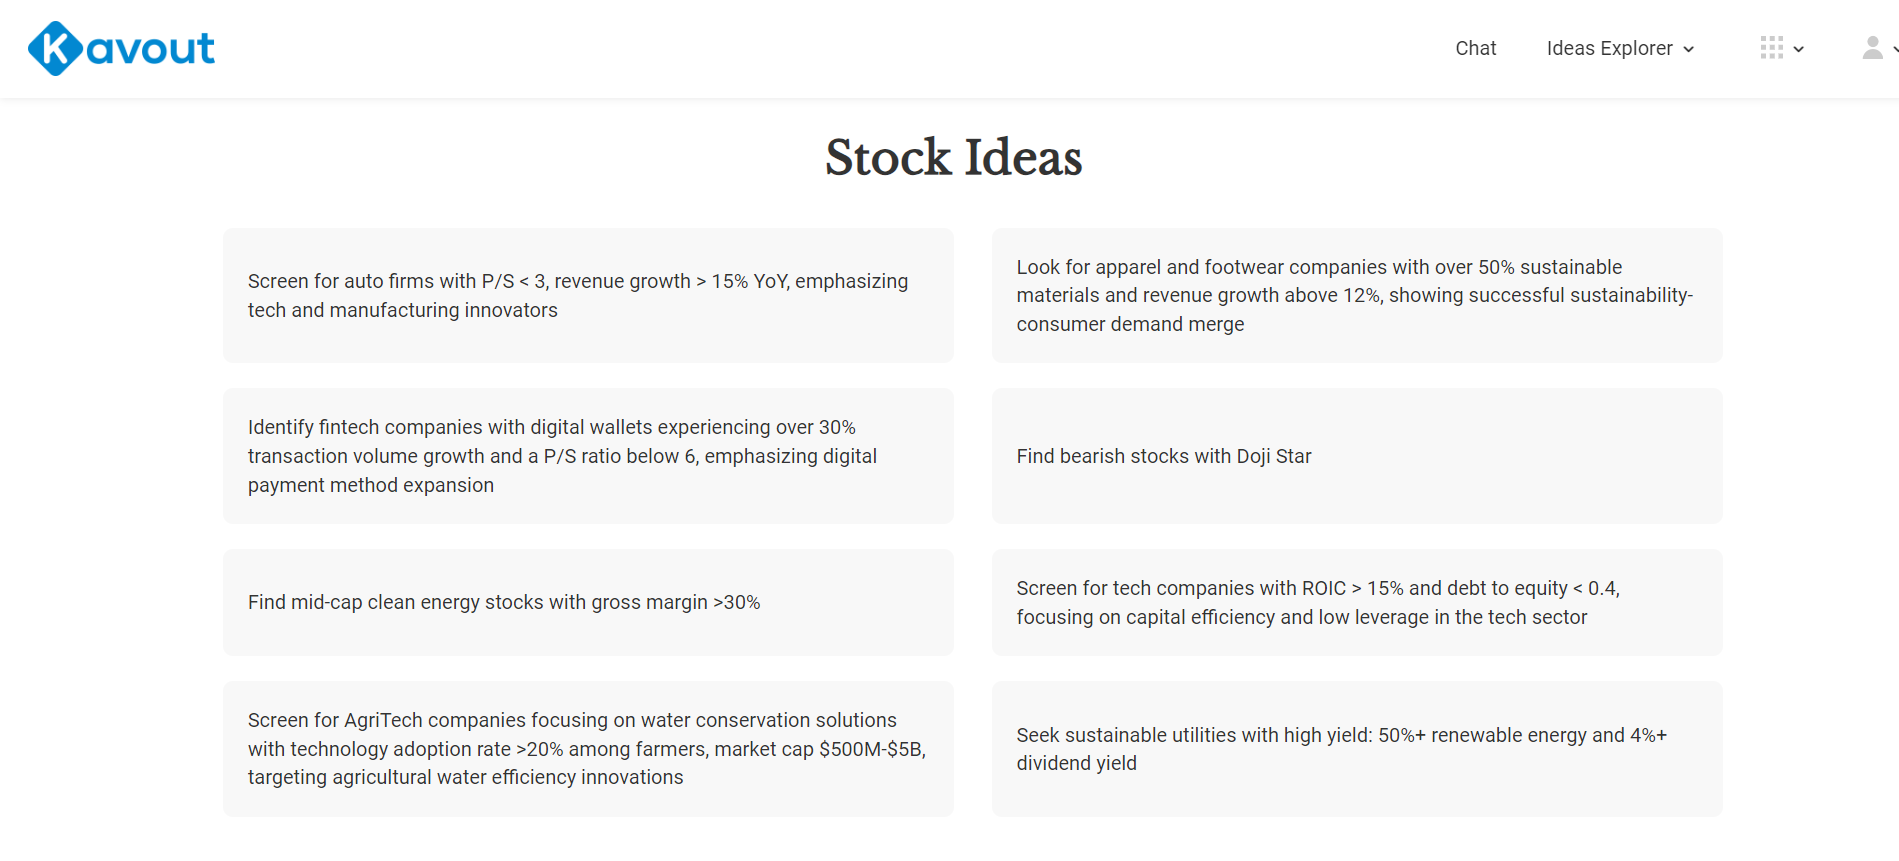 Stock ideas